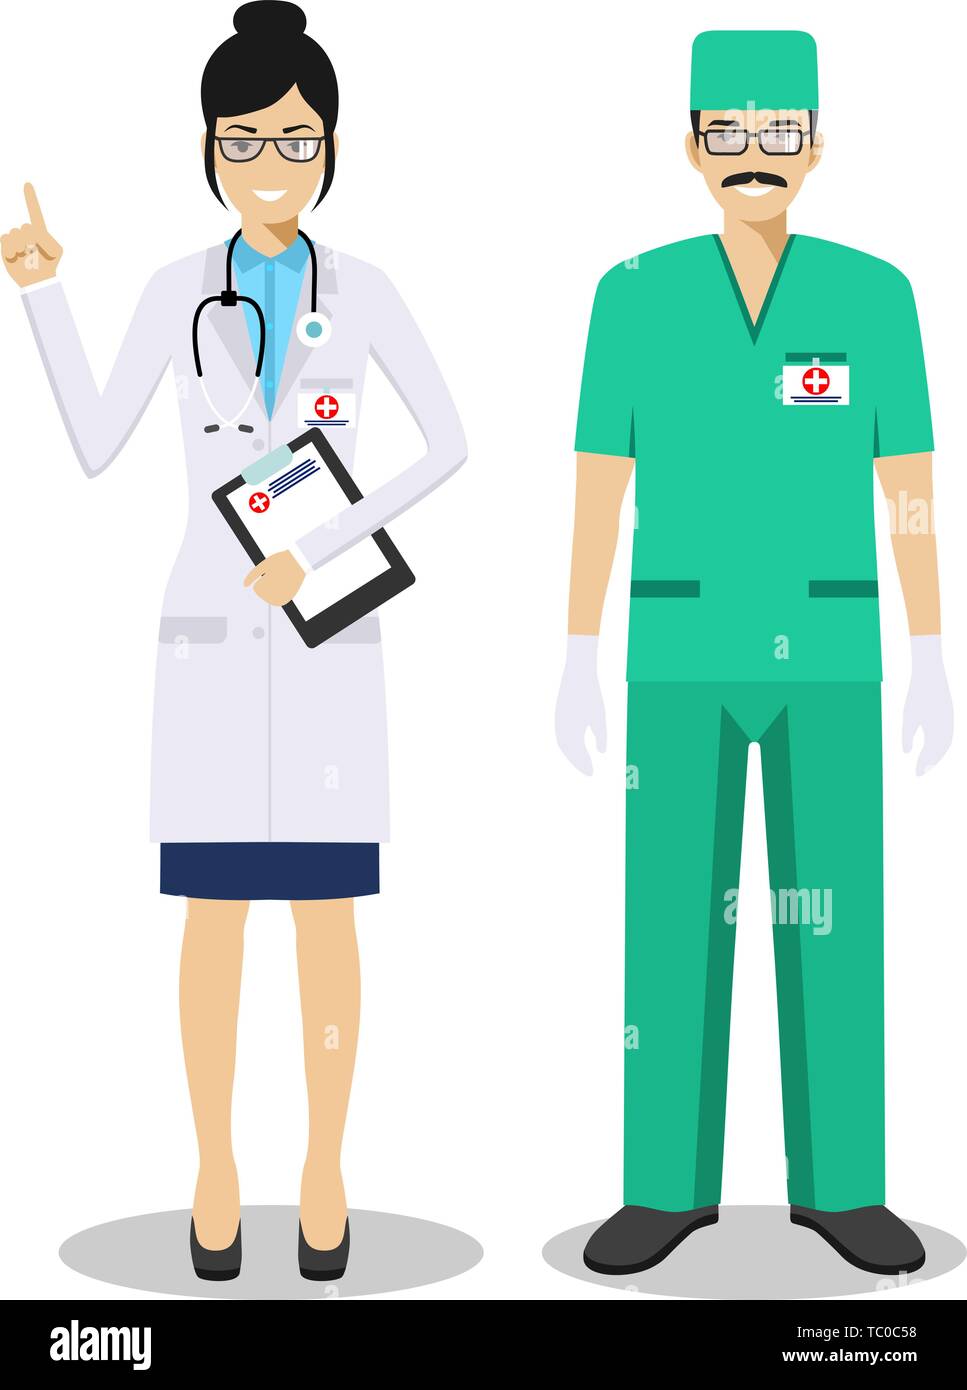 Medizinische Teamarbeit Konzept. Detaillierte Darstellung von Mann und Frau Rettungssanitäter, Notarzt, Krankenschwester im flachen Stil. Praktizierende Ärzte Stock Vektor